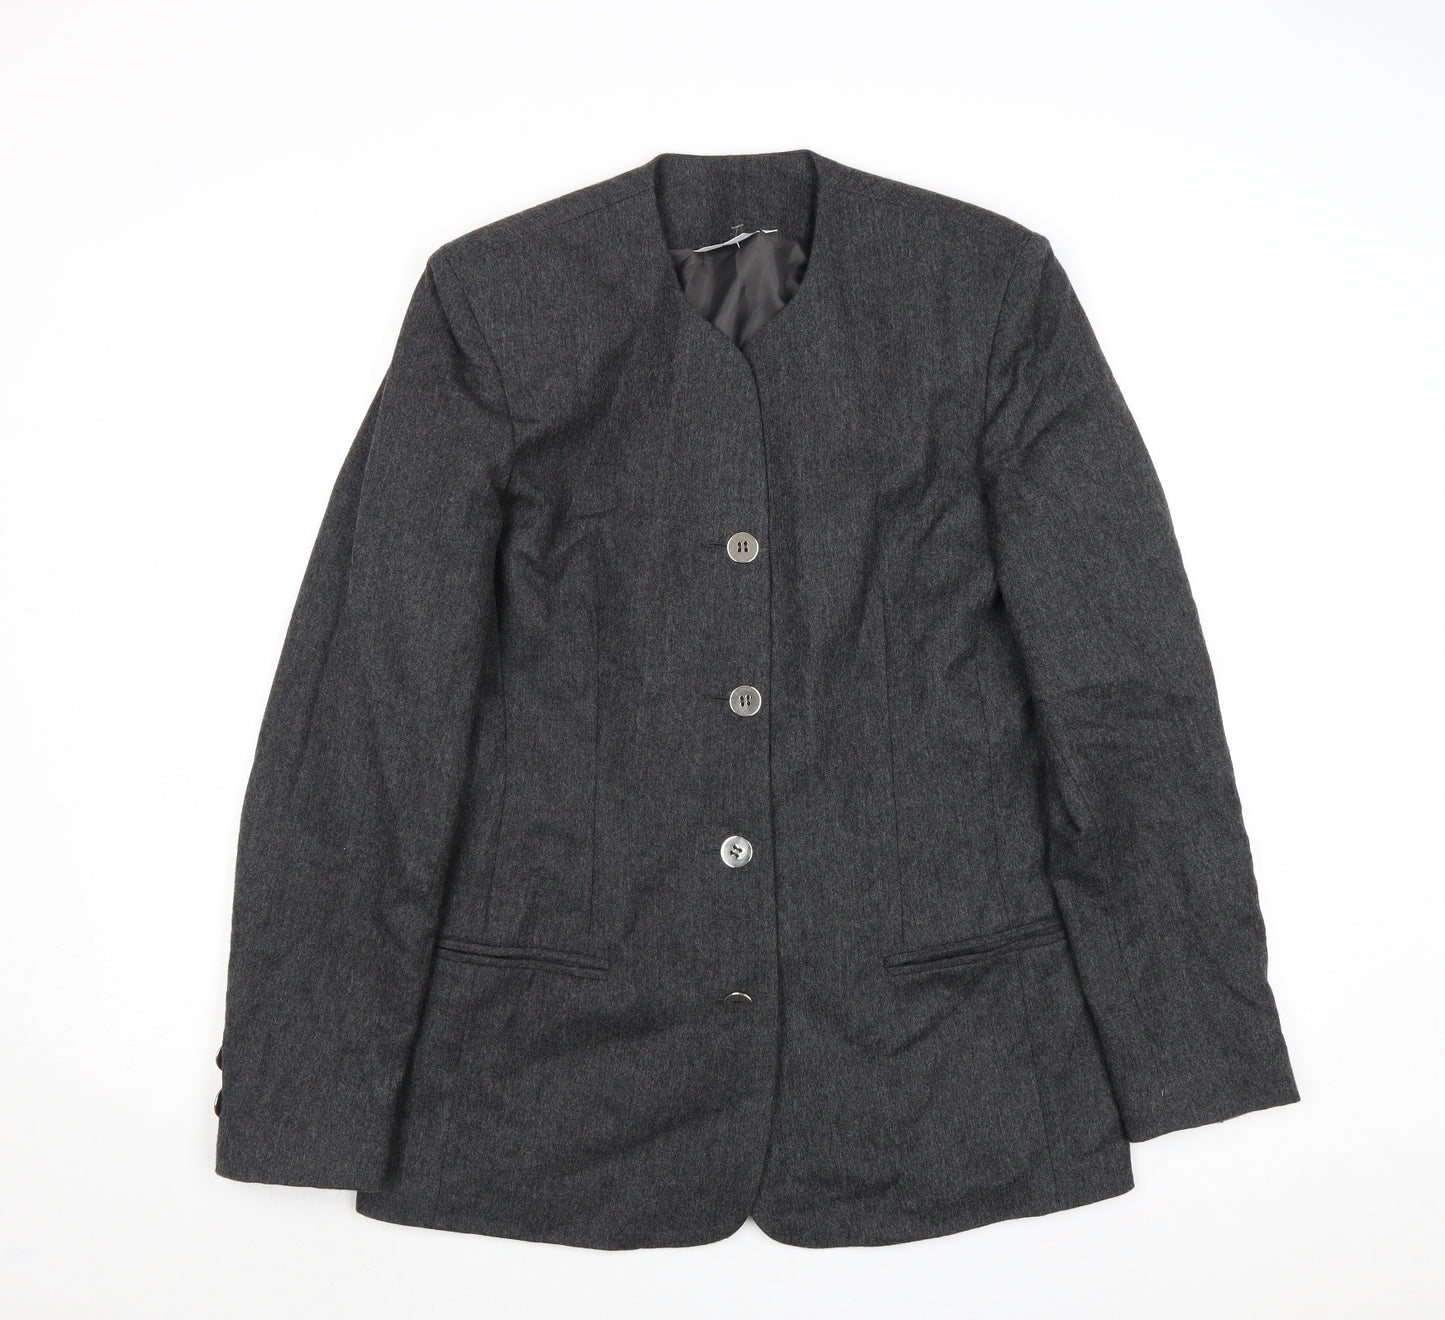 Barry Sherrard Womens Grey Jacket Blazer Size 12 Button